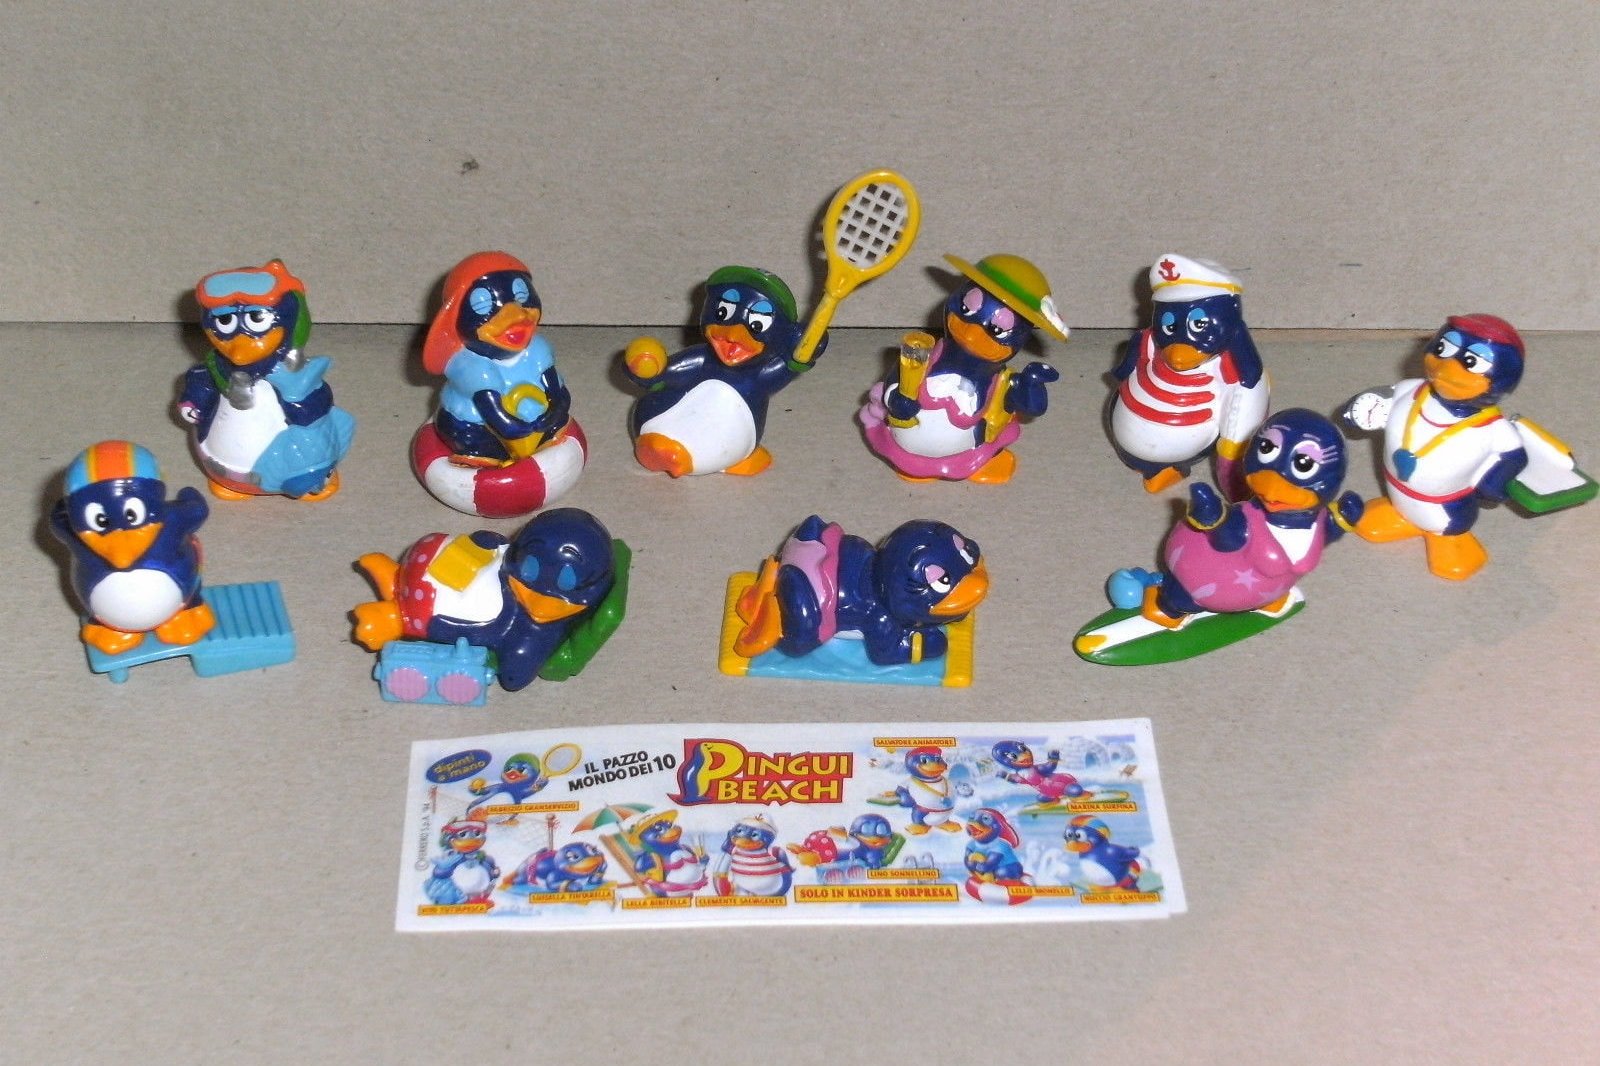 Киндер игрушки пингвины. Коллекция Киндер пингвины 1994. Коллекция пингвинов из Киндер сюрприза 1992. Киндер сюрприз коллекция пингвинов. Коллекция пингвинов из Киндер сюрприза.